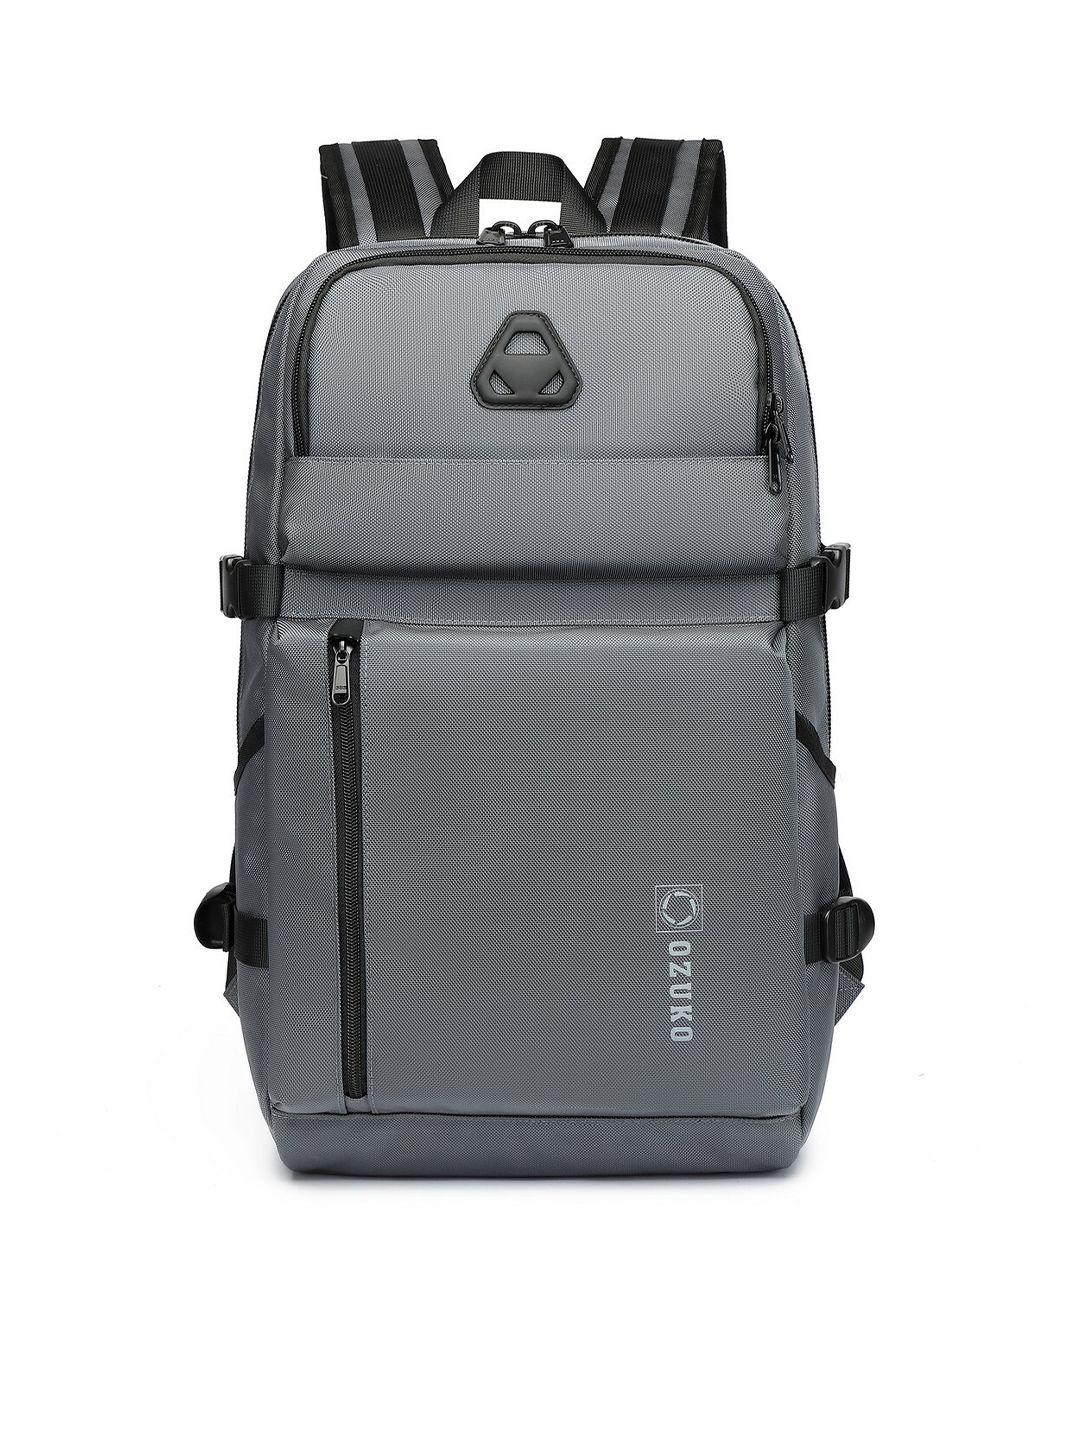 ozuko 9479 range medium soft case backpack